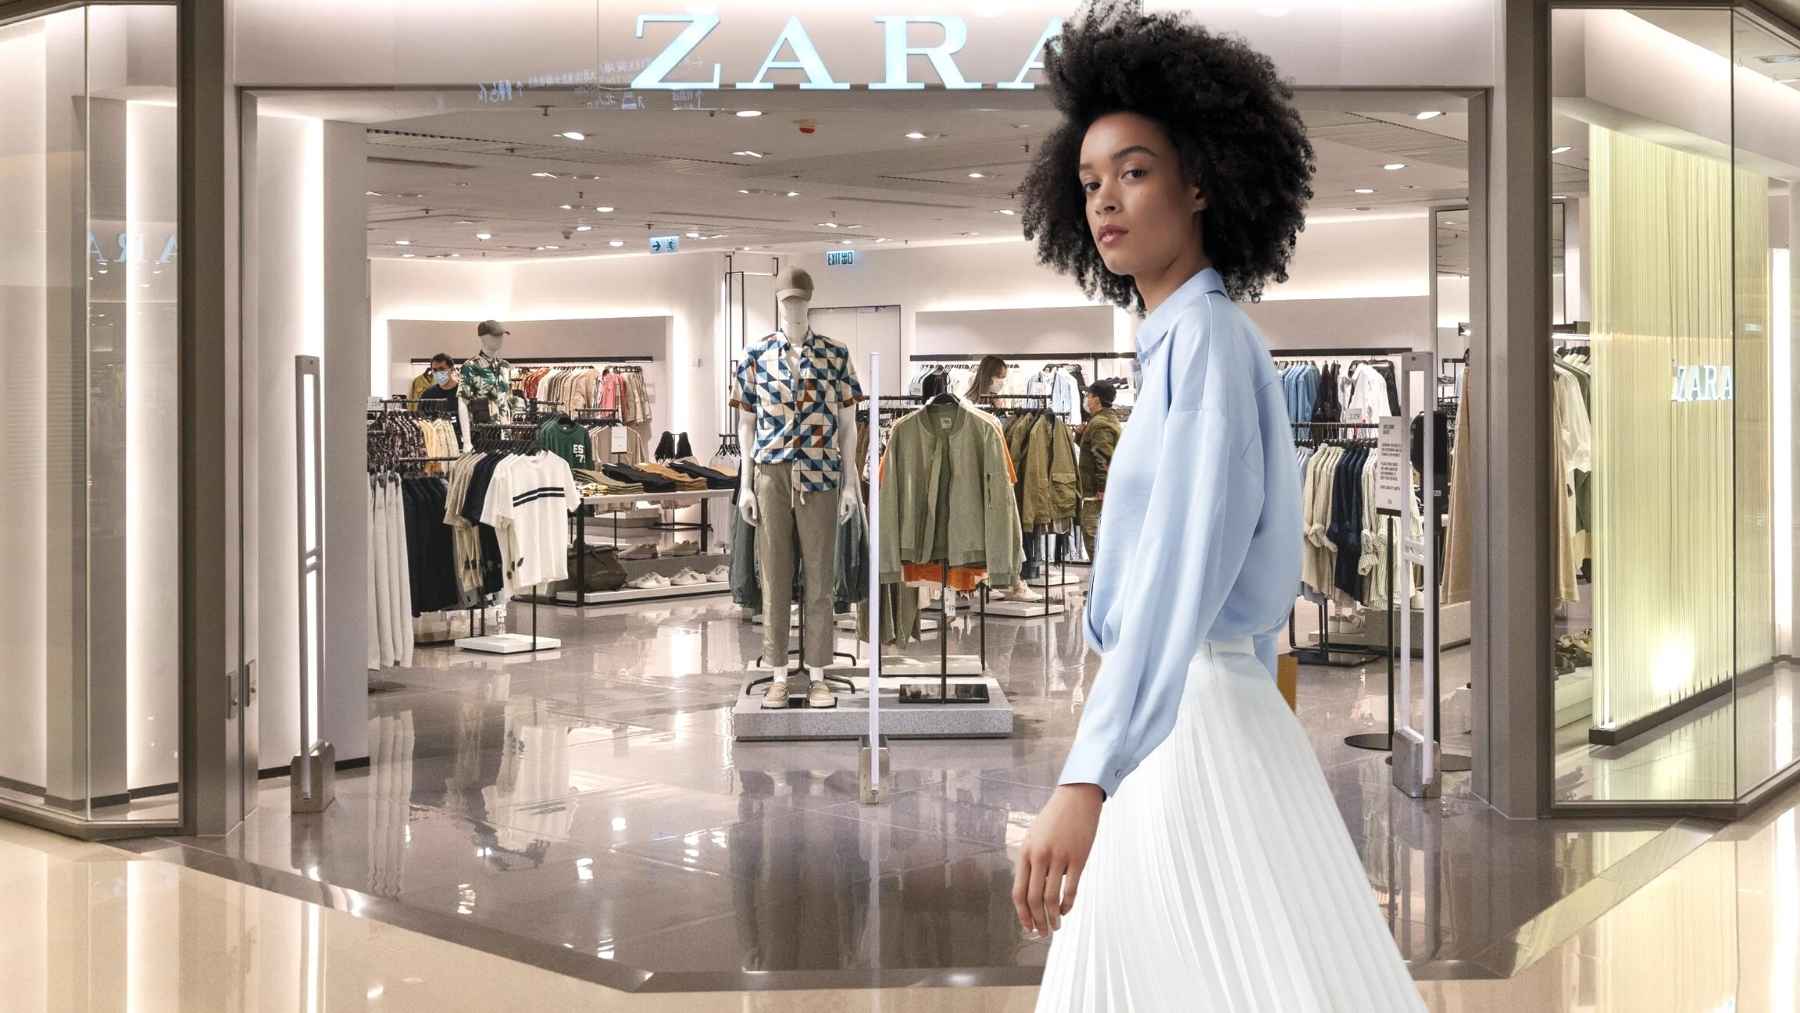 Las camisas y pantalones básicos de Zara que toda mujer desea tener de fondo de armario